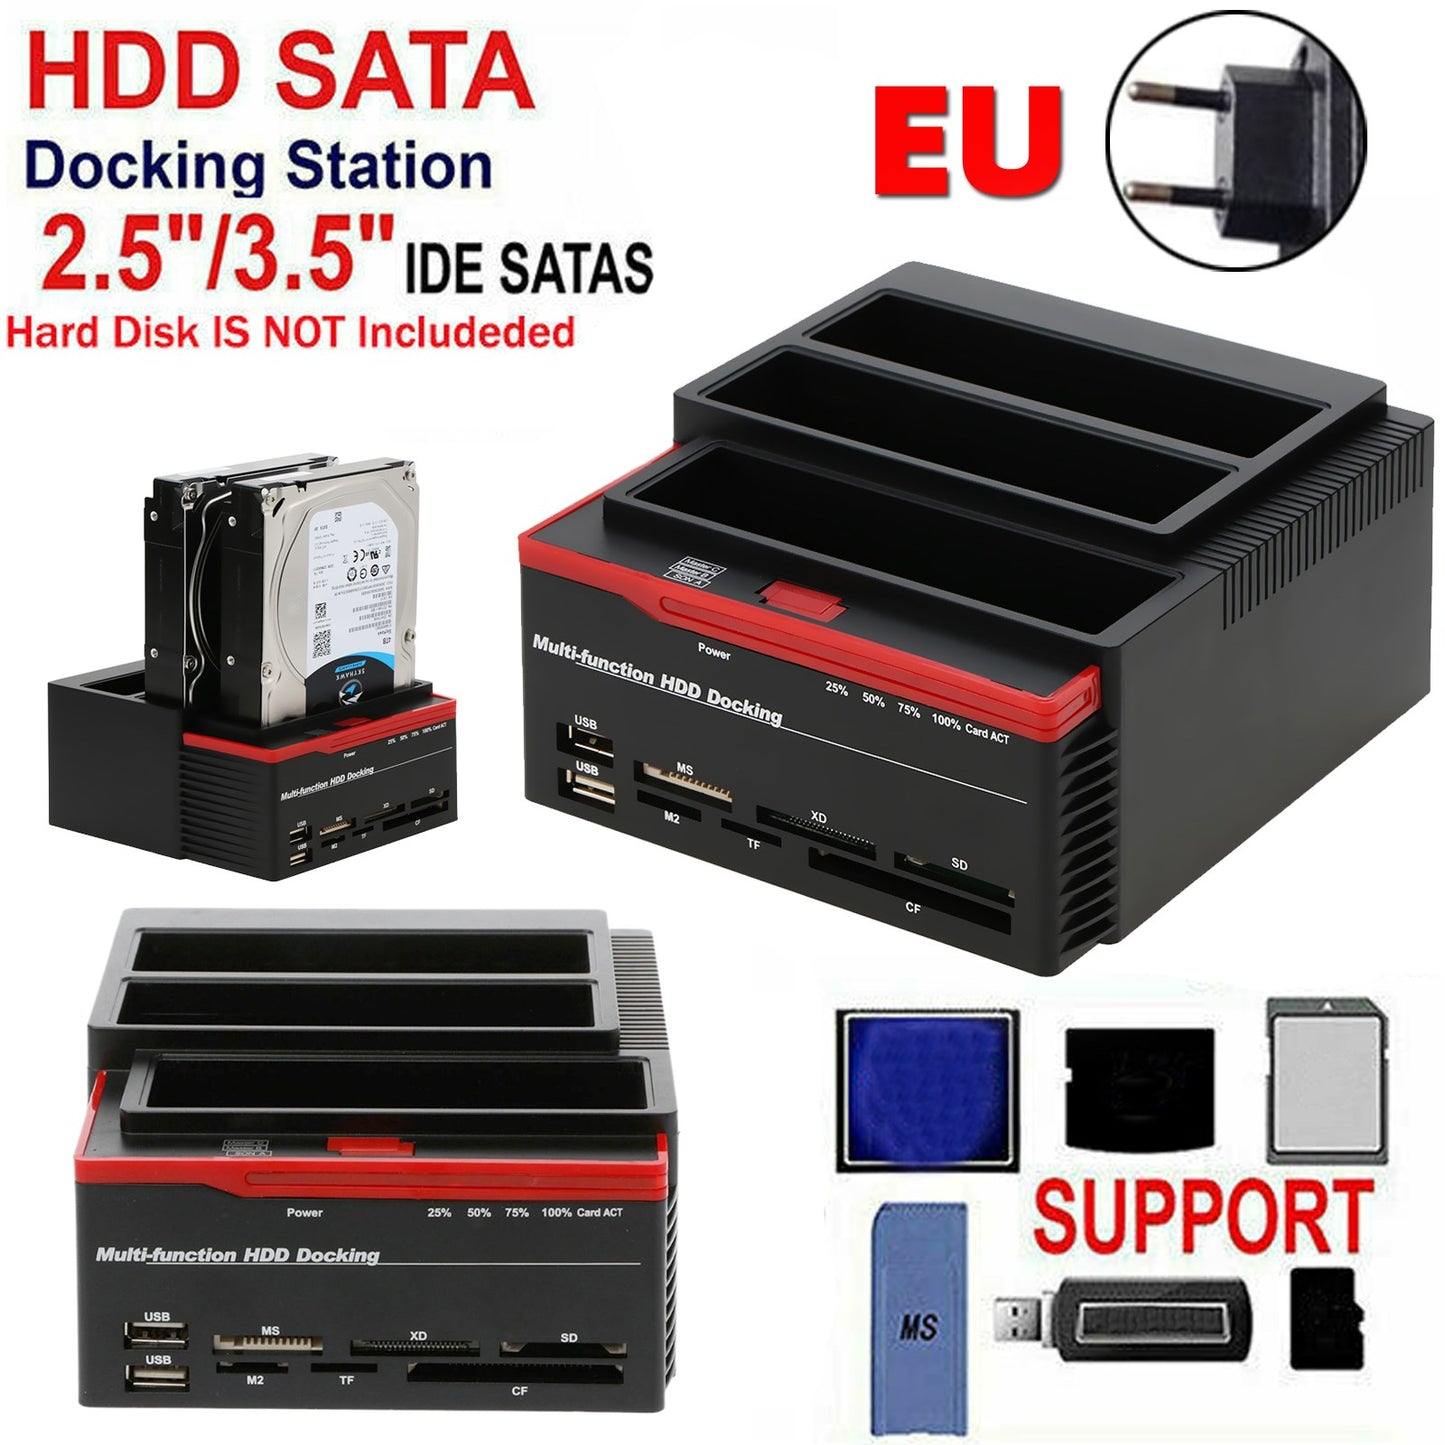 3 IDE SATA 2,5 "3,5" HDD Festplatten -Festplattenklon -Dockingstation -Kartenleser EU